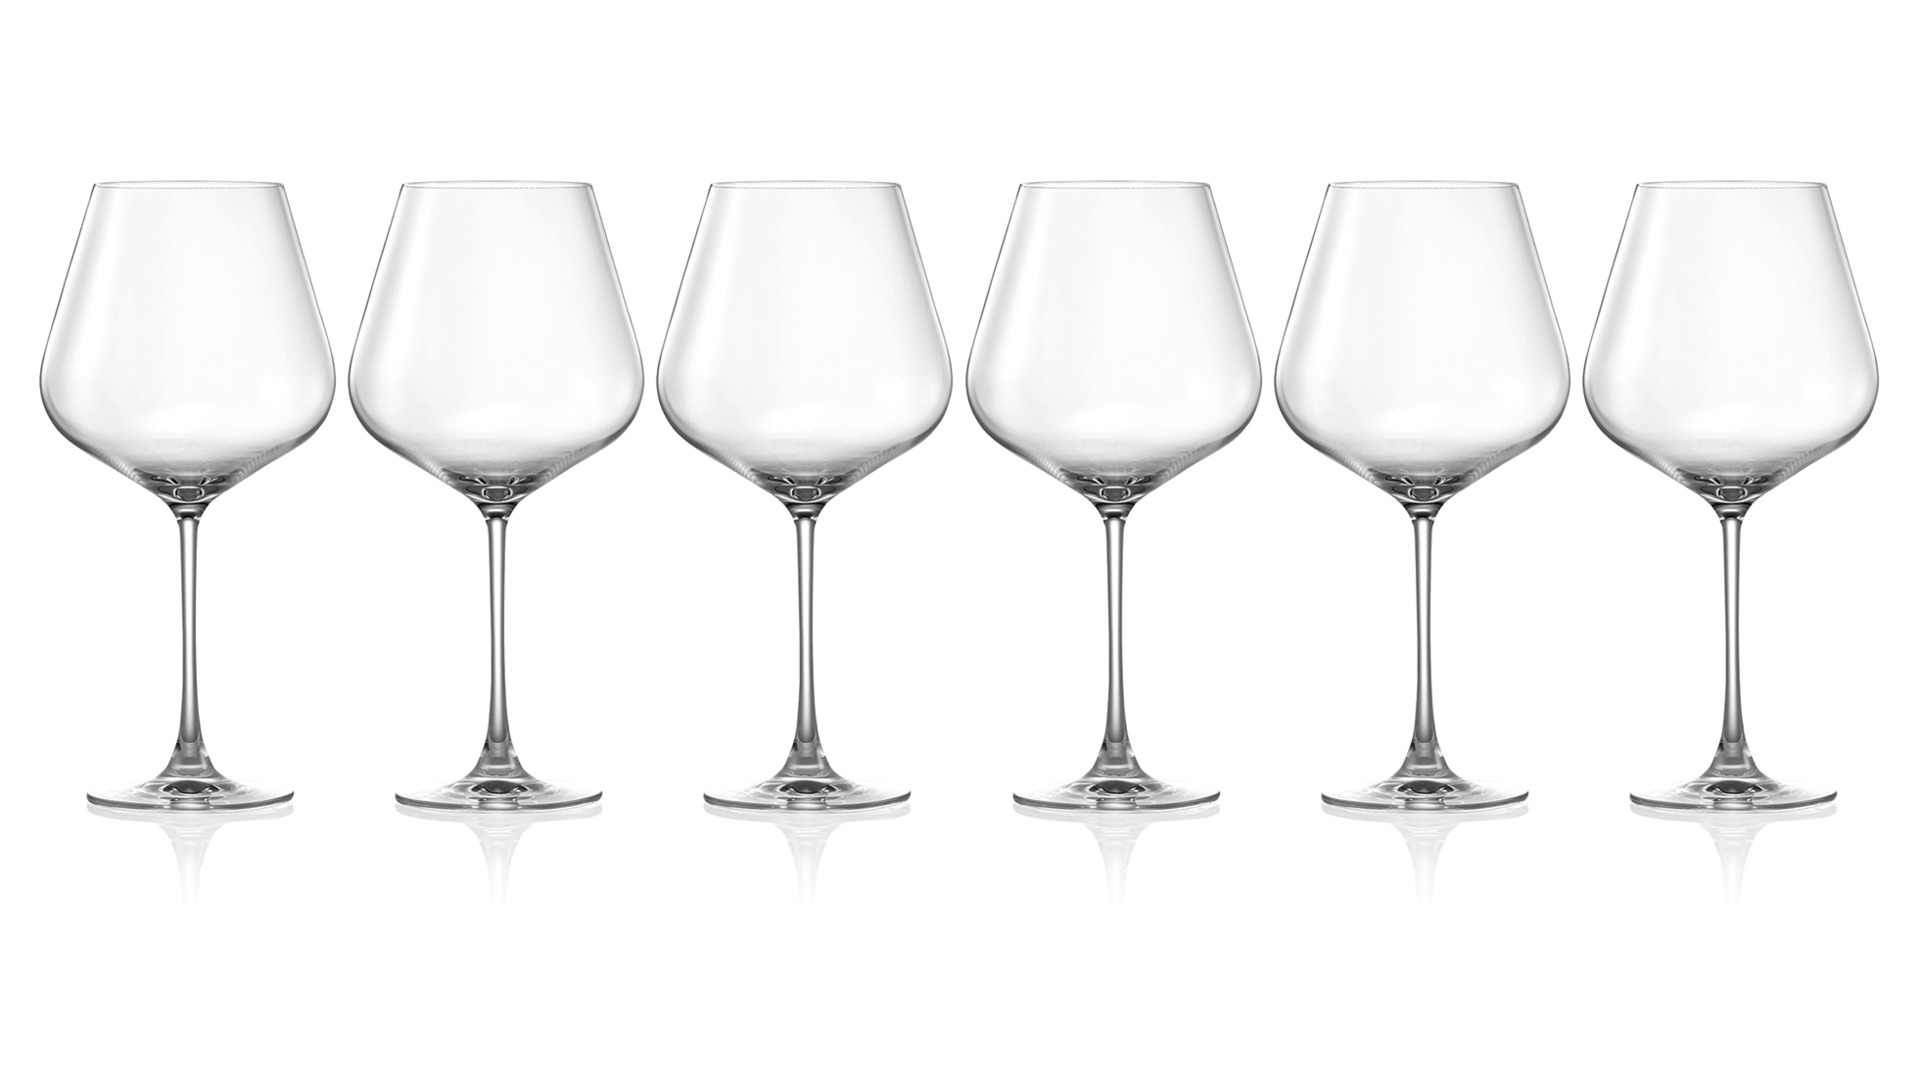 Набор бокалов для красного вина Lucaris Hong Kong 910 мл, 6 шт, стекло хрустальное